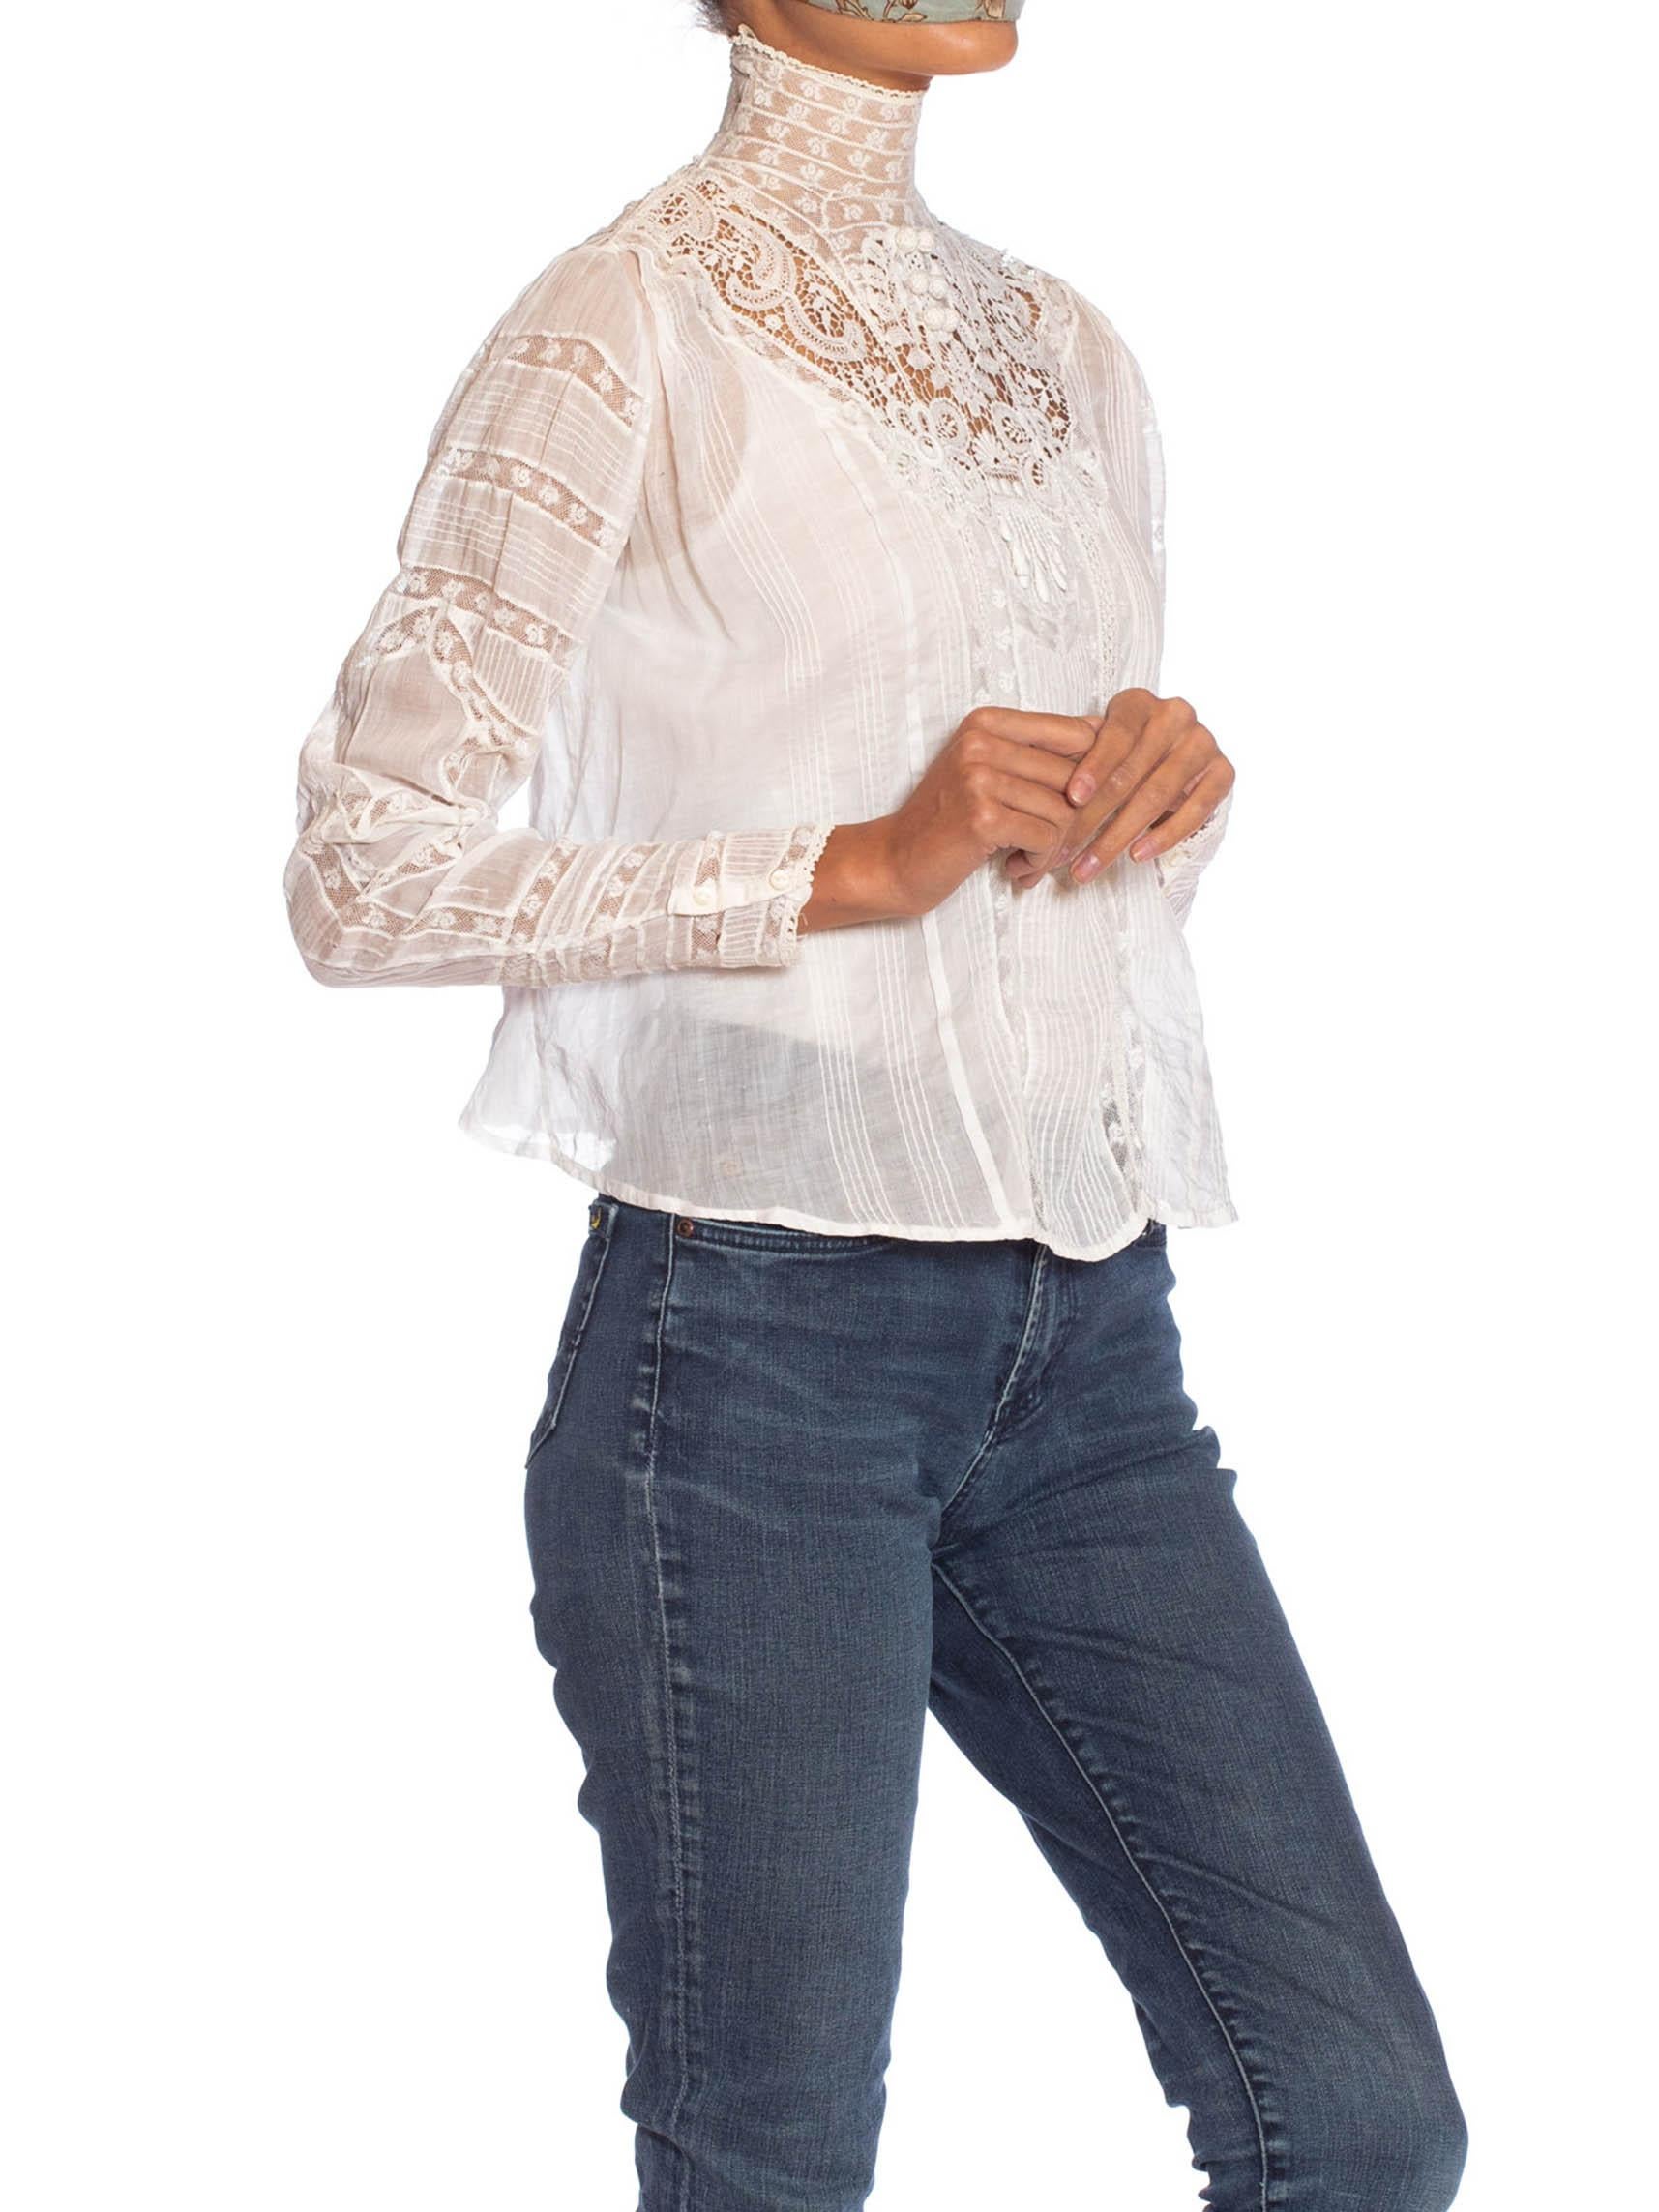 victorian lace blouse